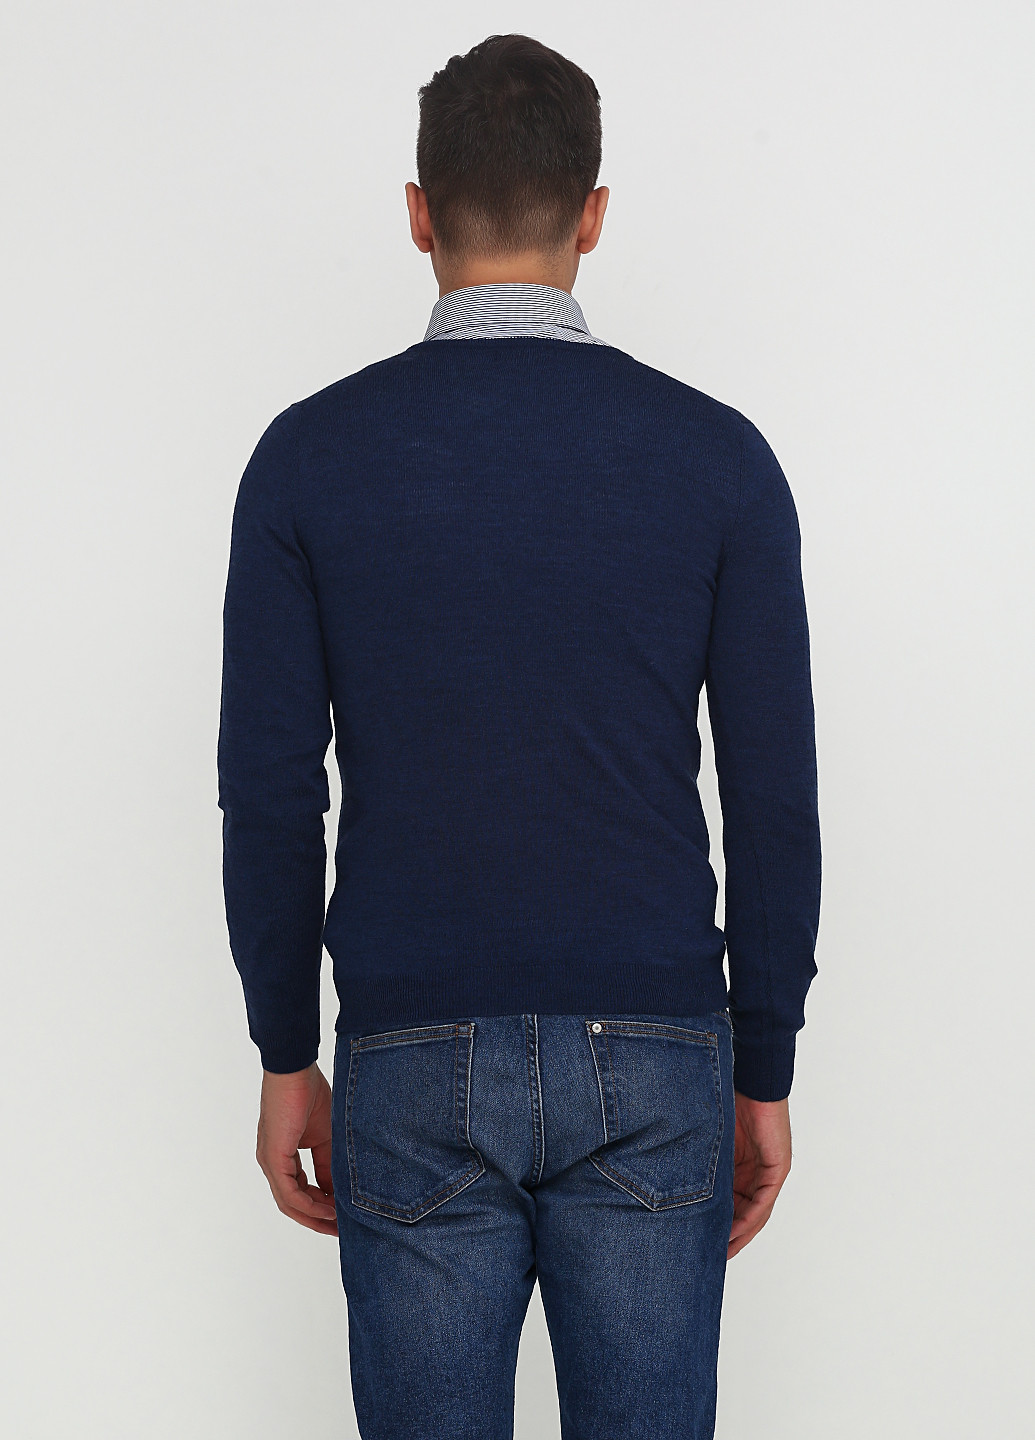 Темно-синий демисезонный пуловер пуловер Matinique